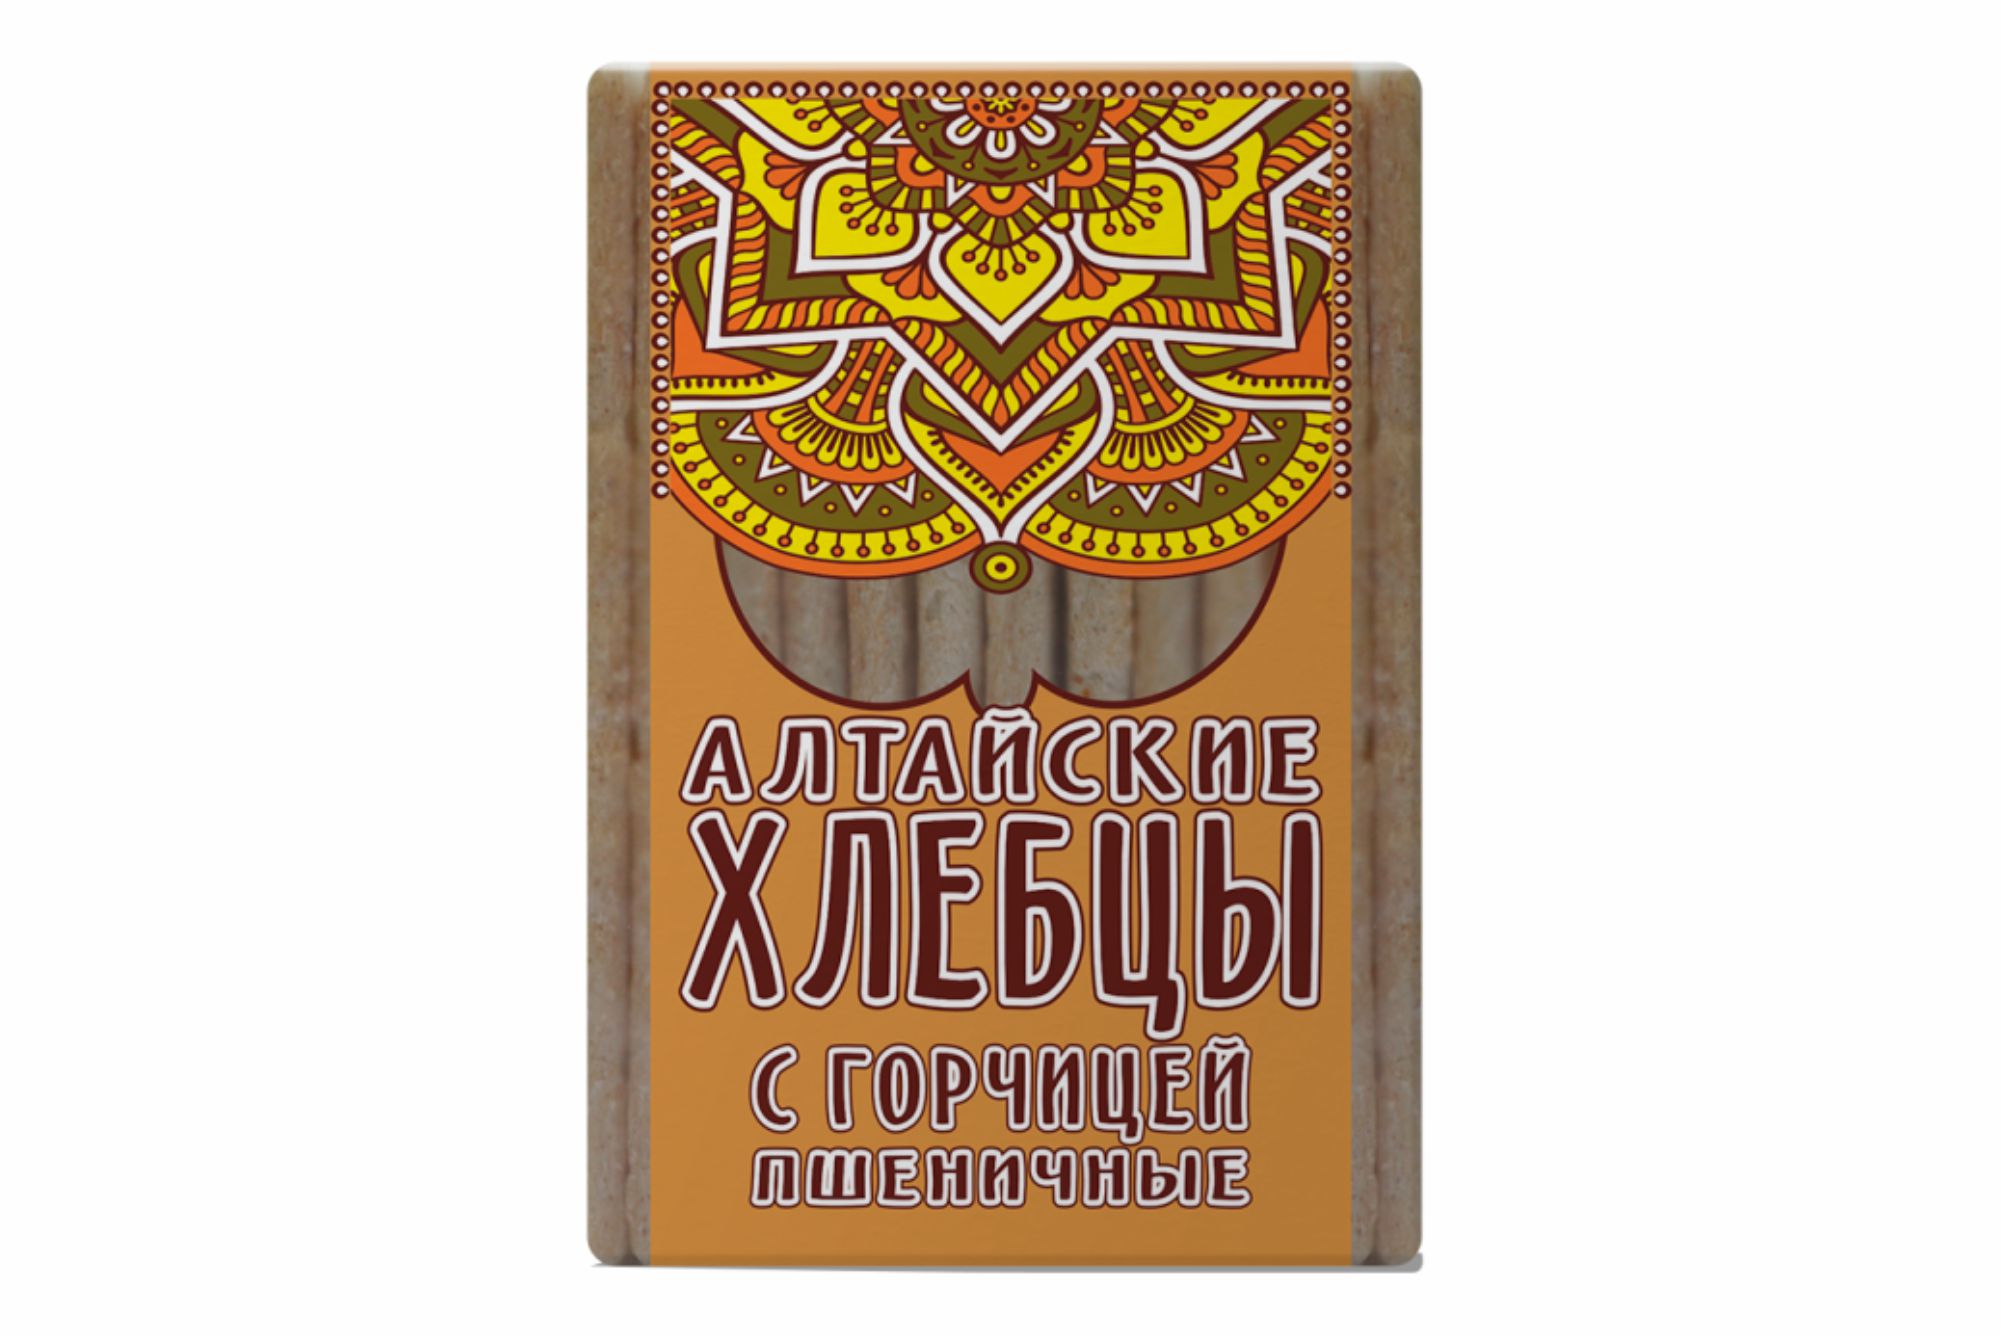 Хлебцы Алтайские «Пшеничные с горчицей» 75 г